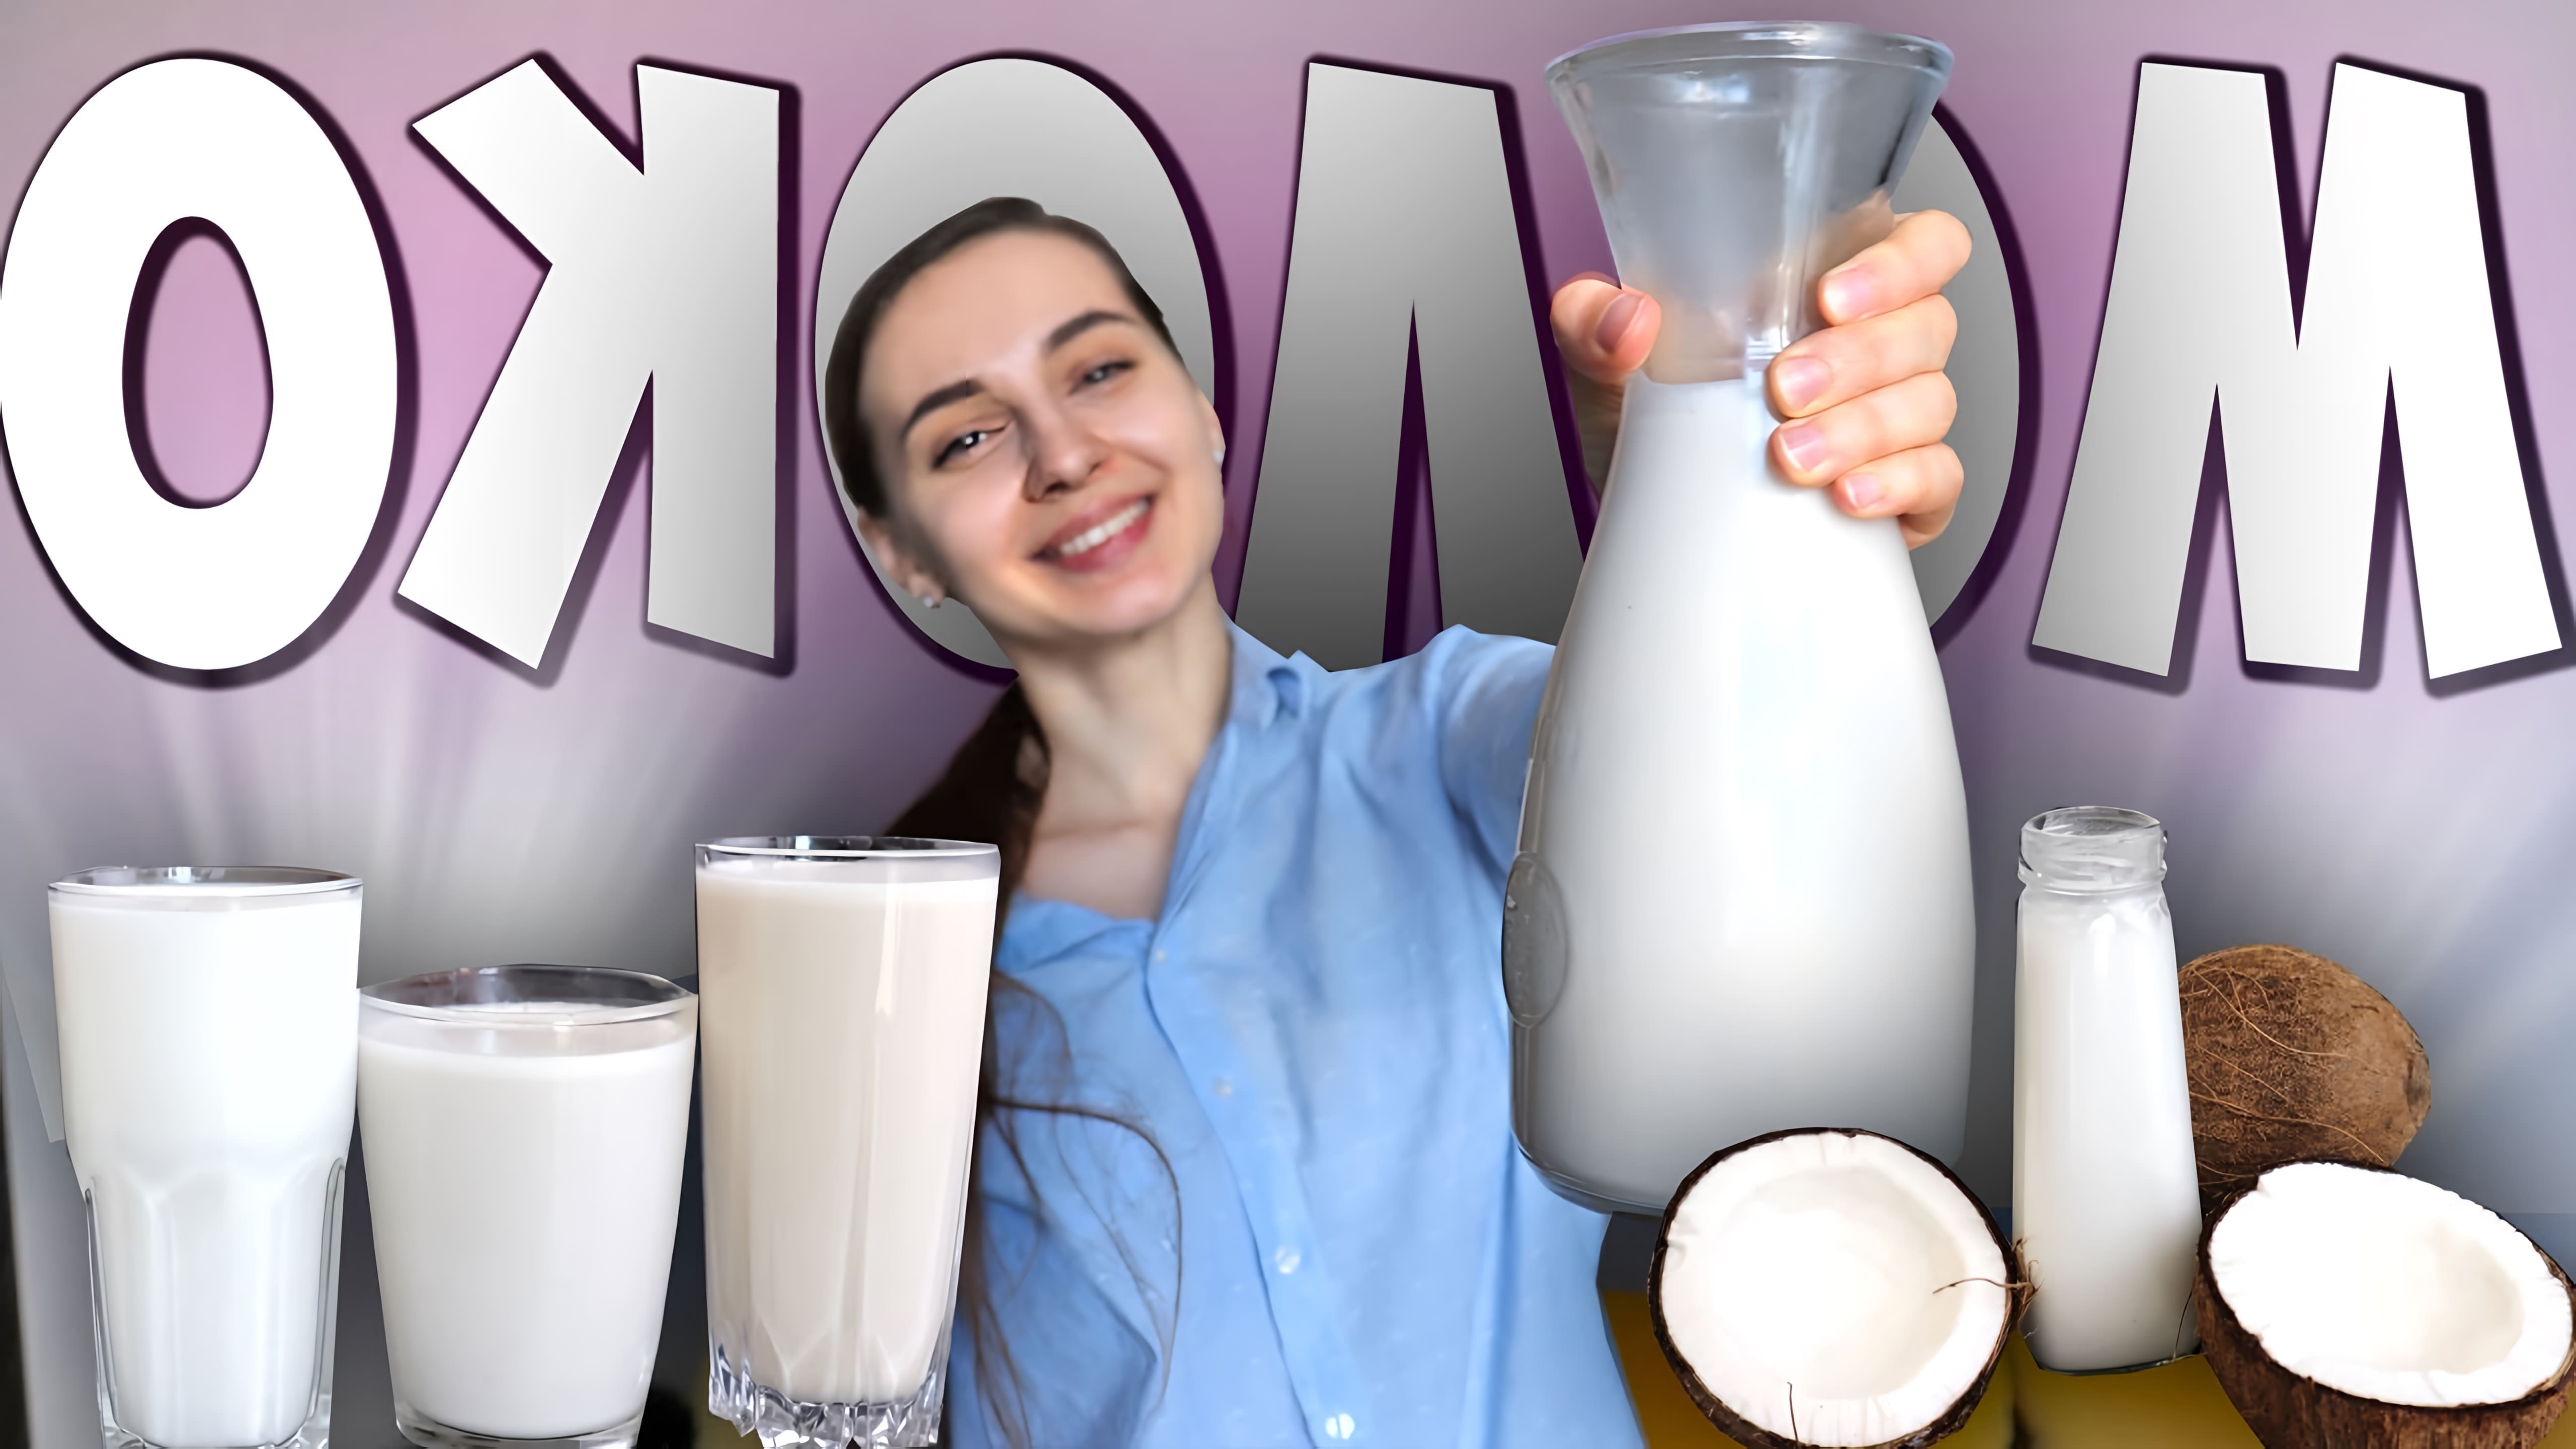 В этом видео демонстрируется процесс приготовления различных видов растительного молока: овсяного, кокосового, рисового и орехового